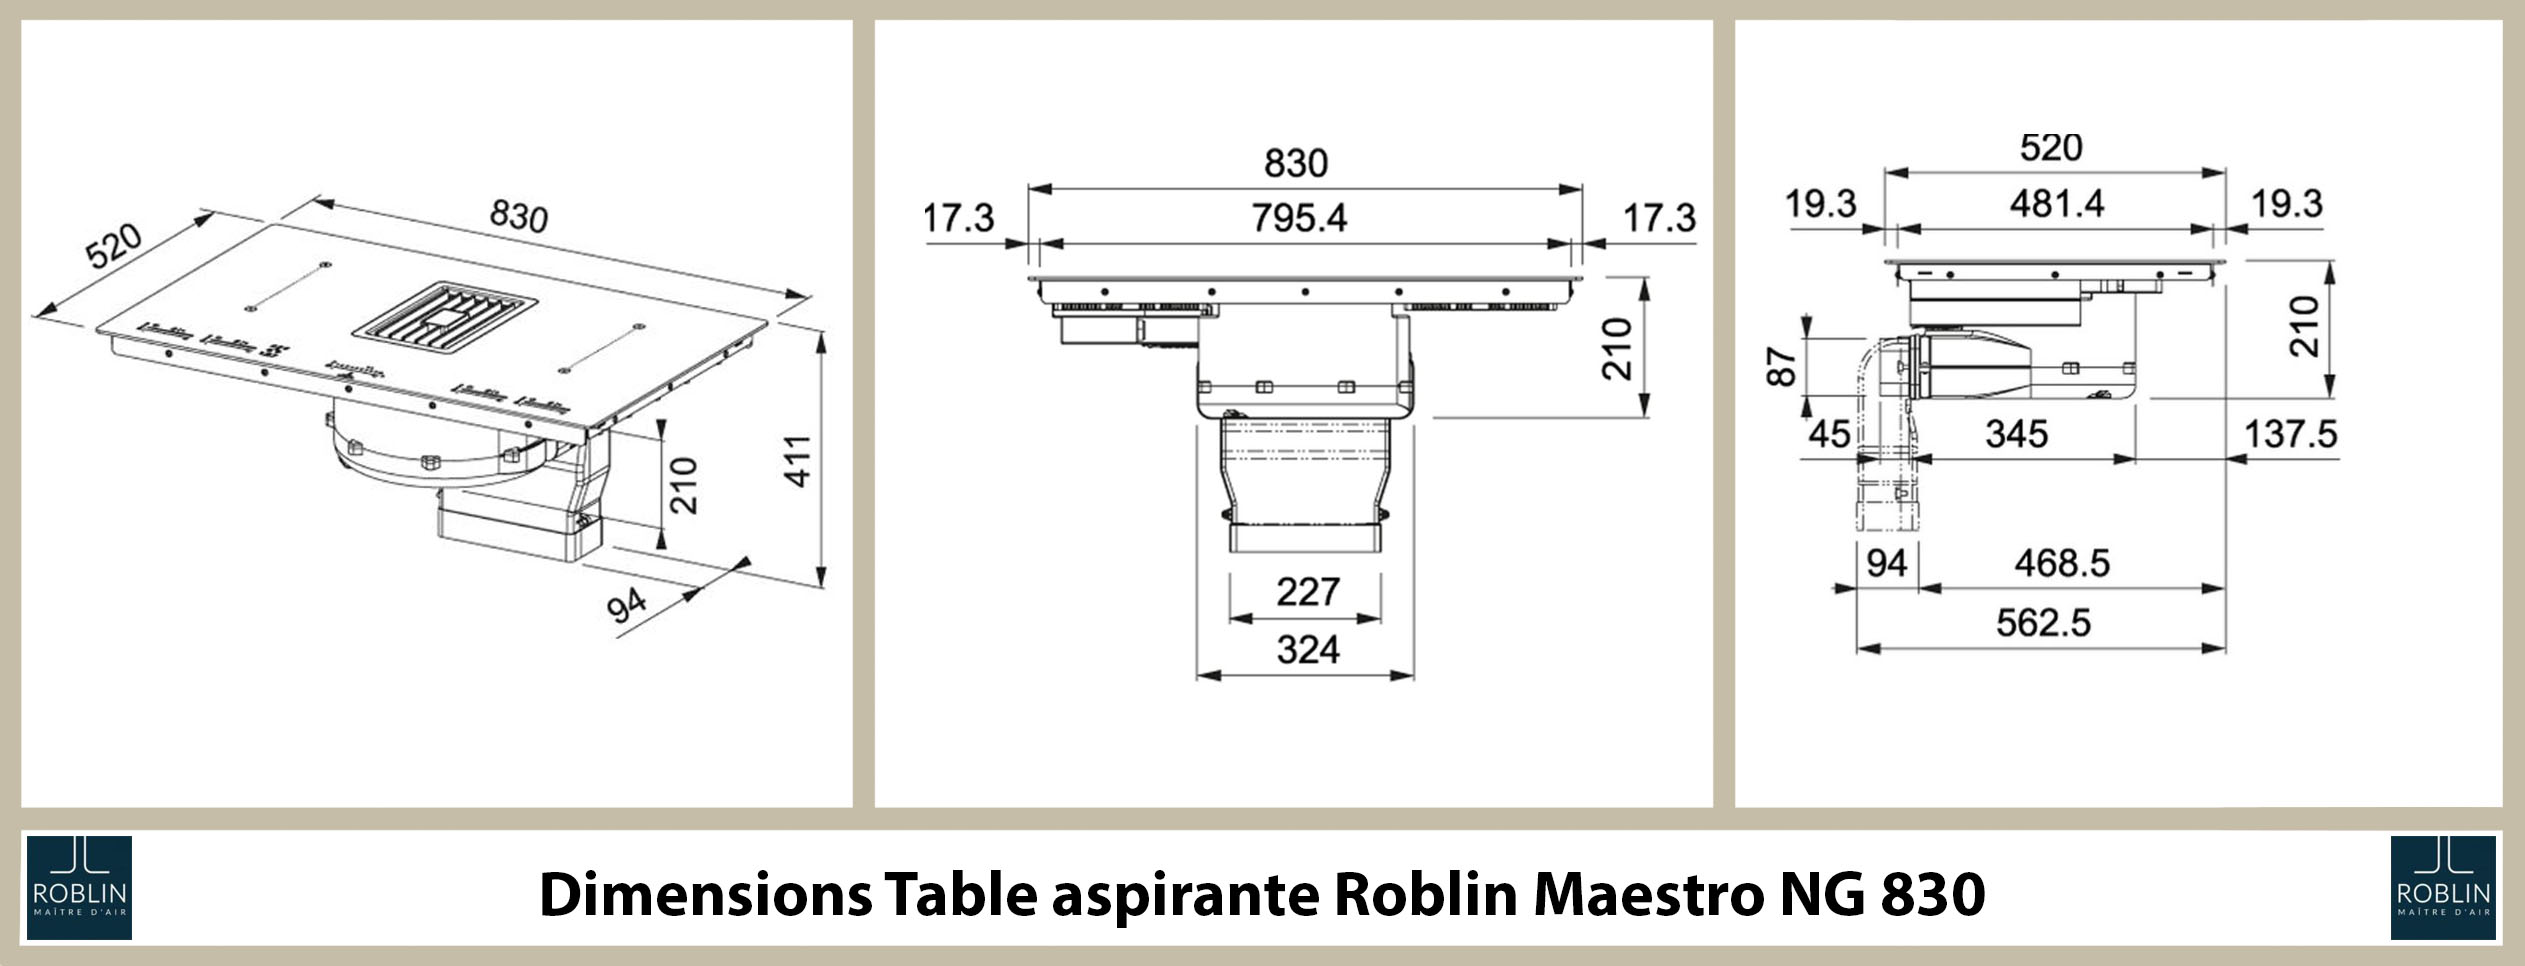 dimensions de la table aspirante maestro NG830 de roblin